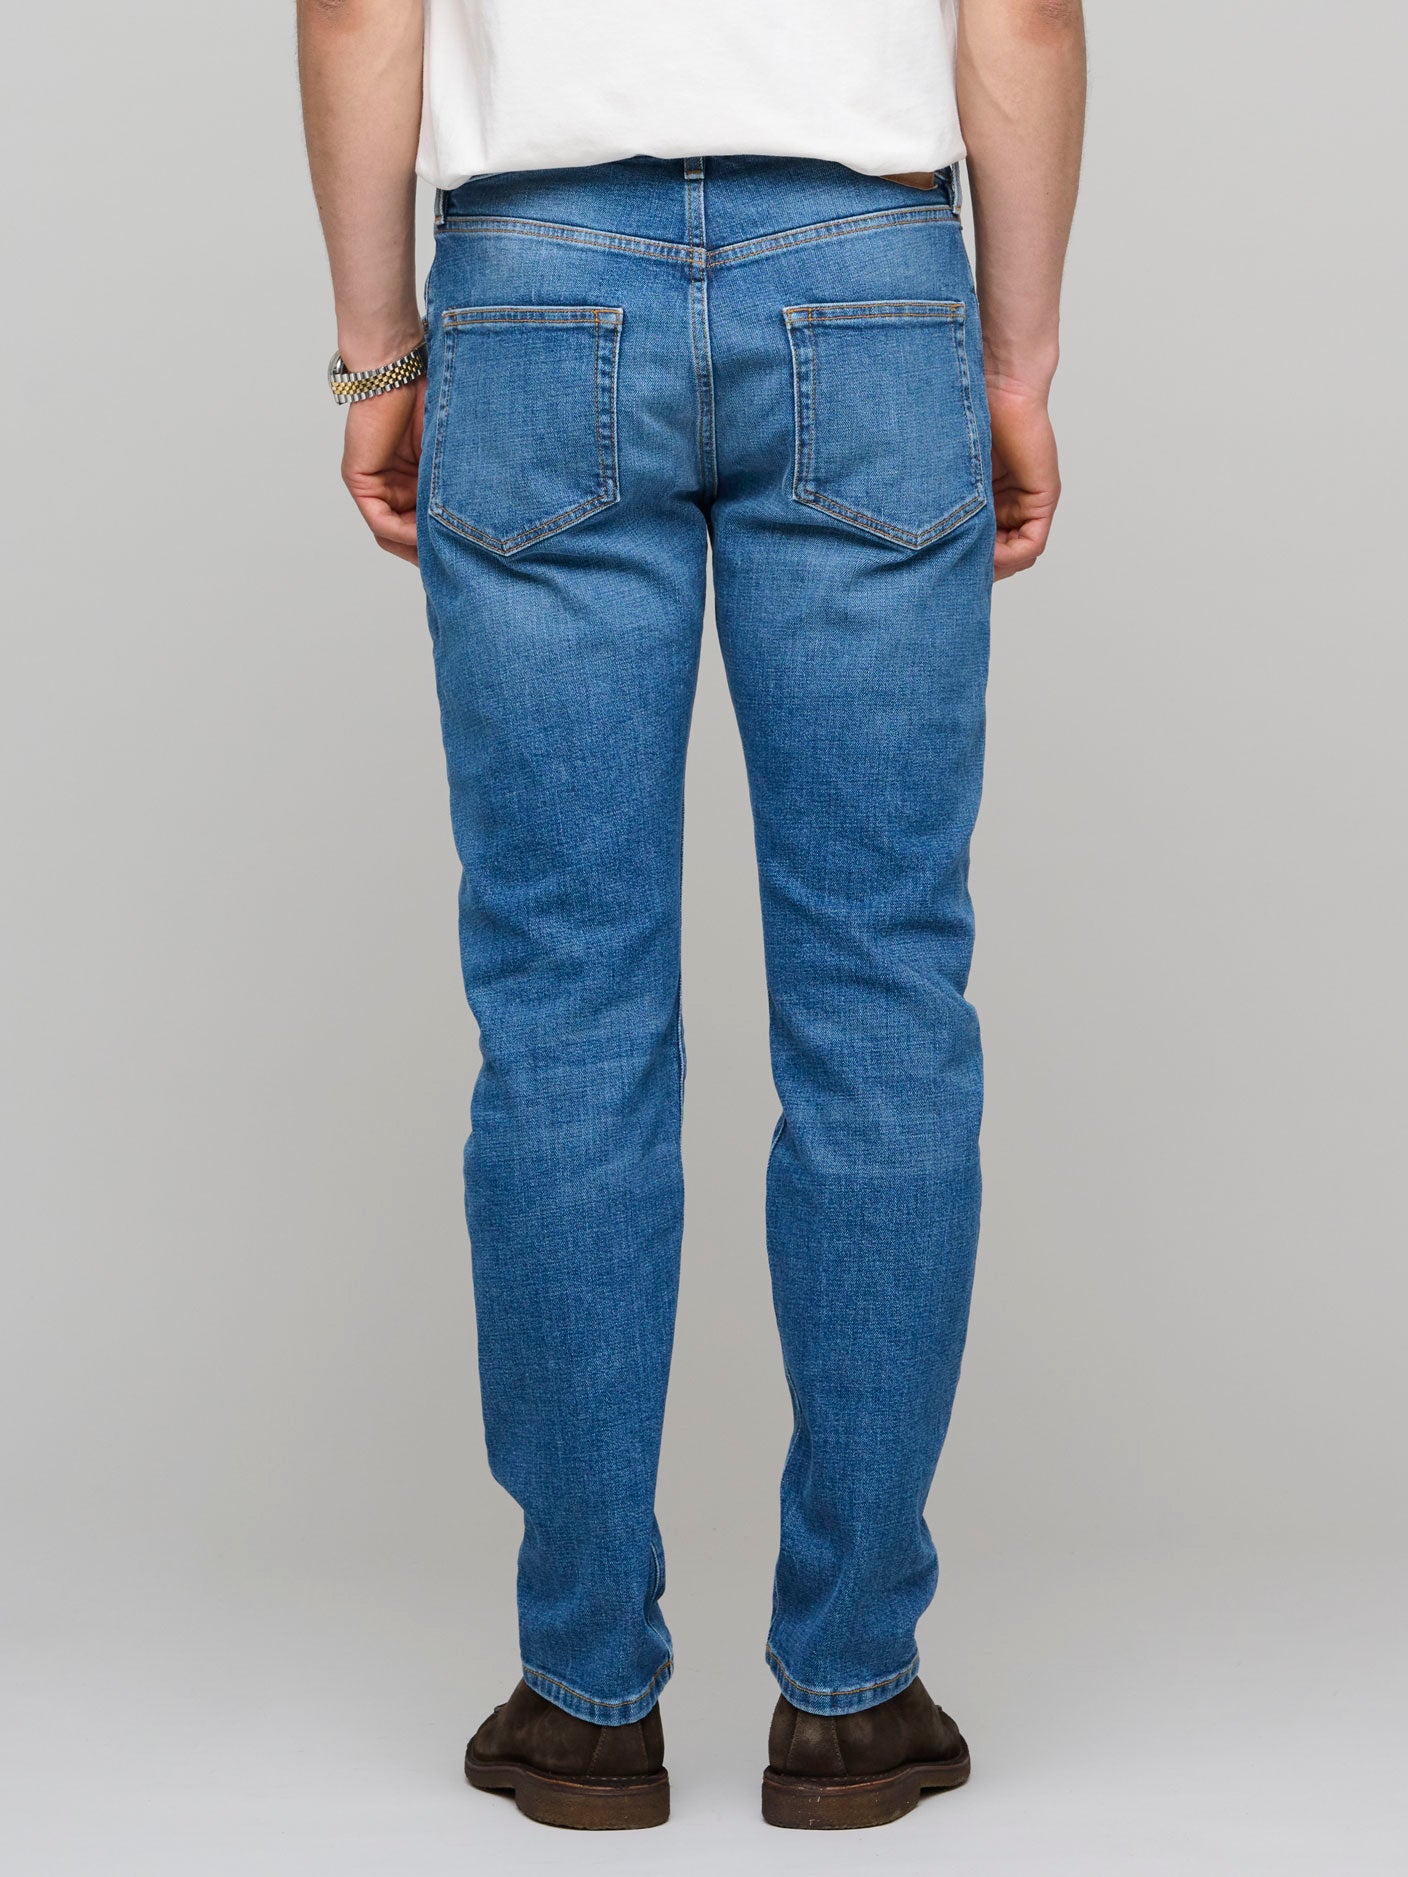 TM005 Tapered Jeans, Mid Vintage